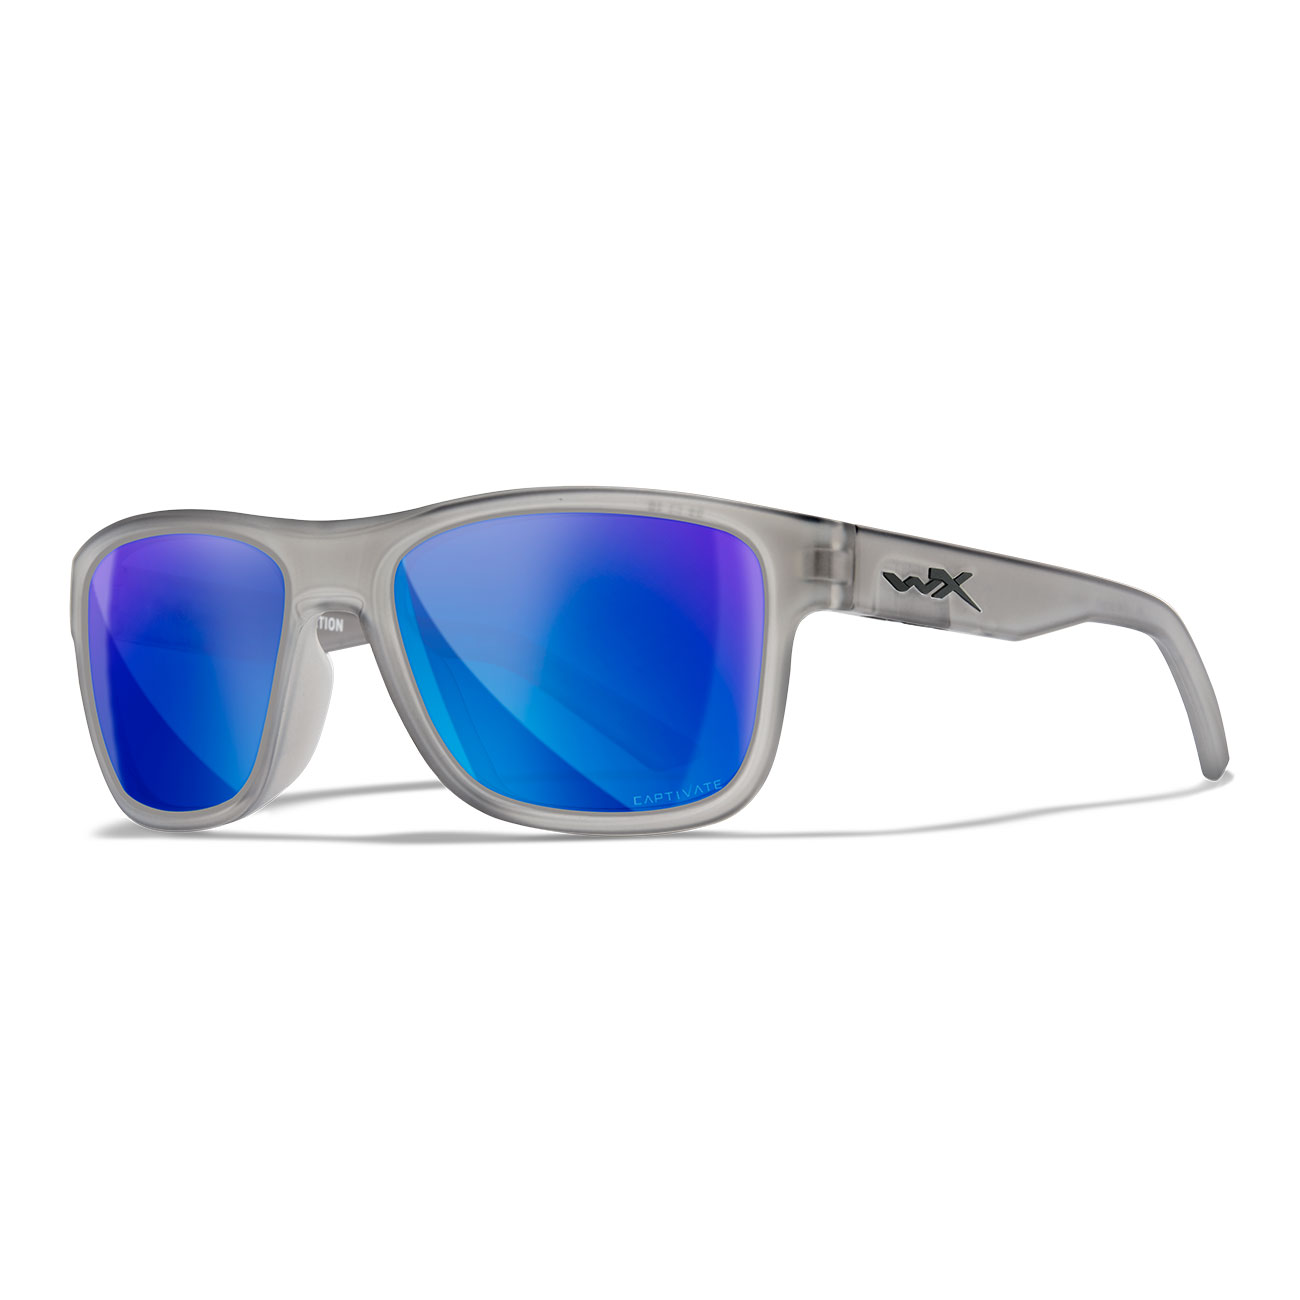 Wiley X Sonnenbrille Ovation Captivate matt transparent grau Glser blau verspiegelt polarisiert inkl. Brillenetui und Seitensch Bild 5